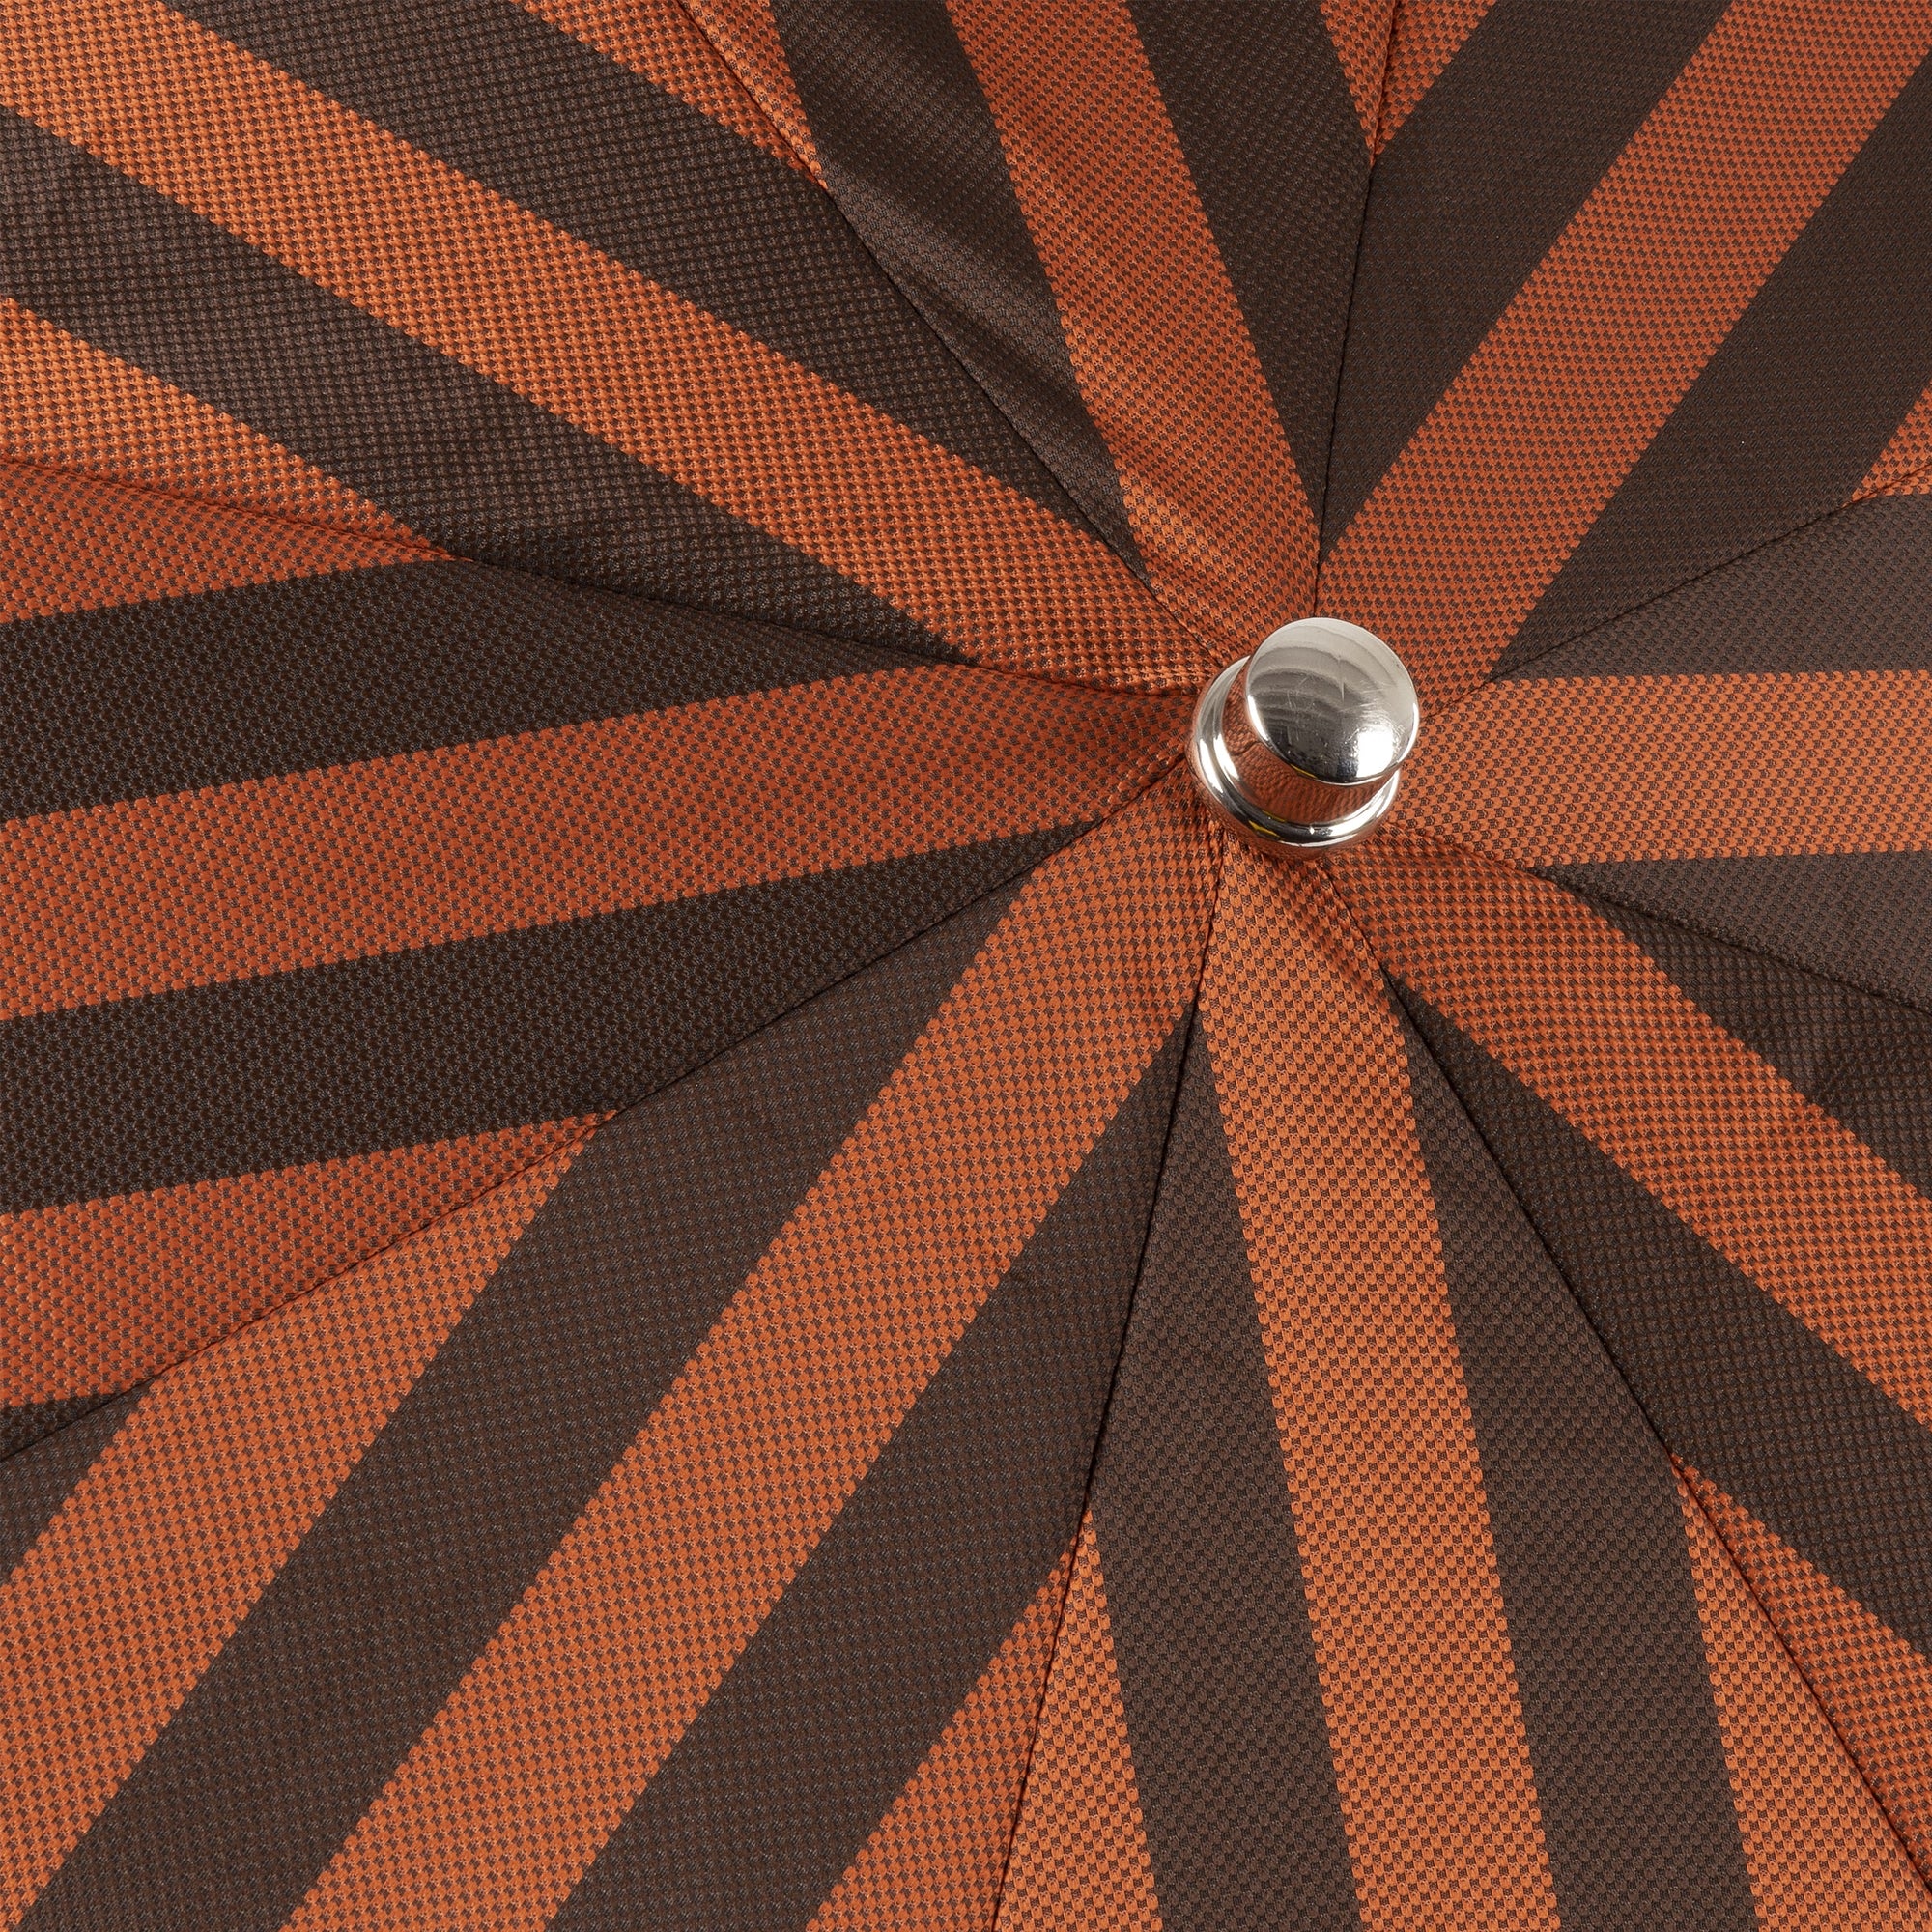 Folding Umbrella with Polished Chestnut Handle